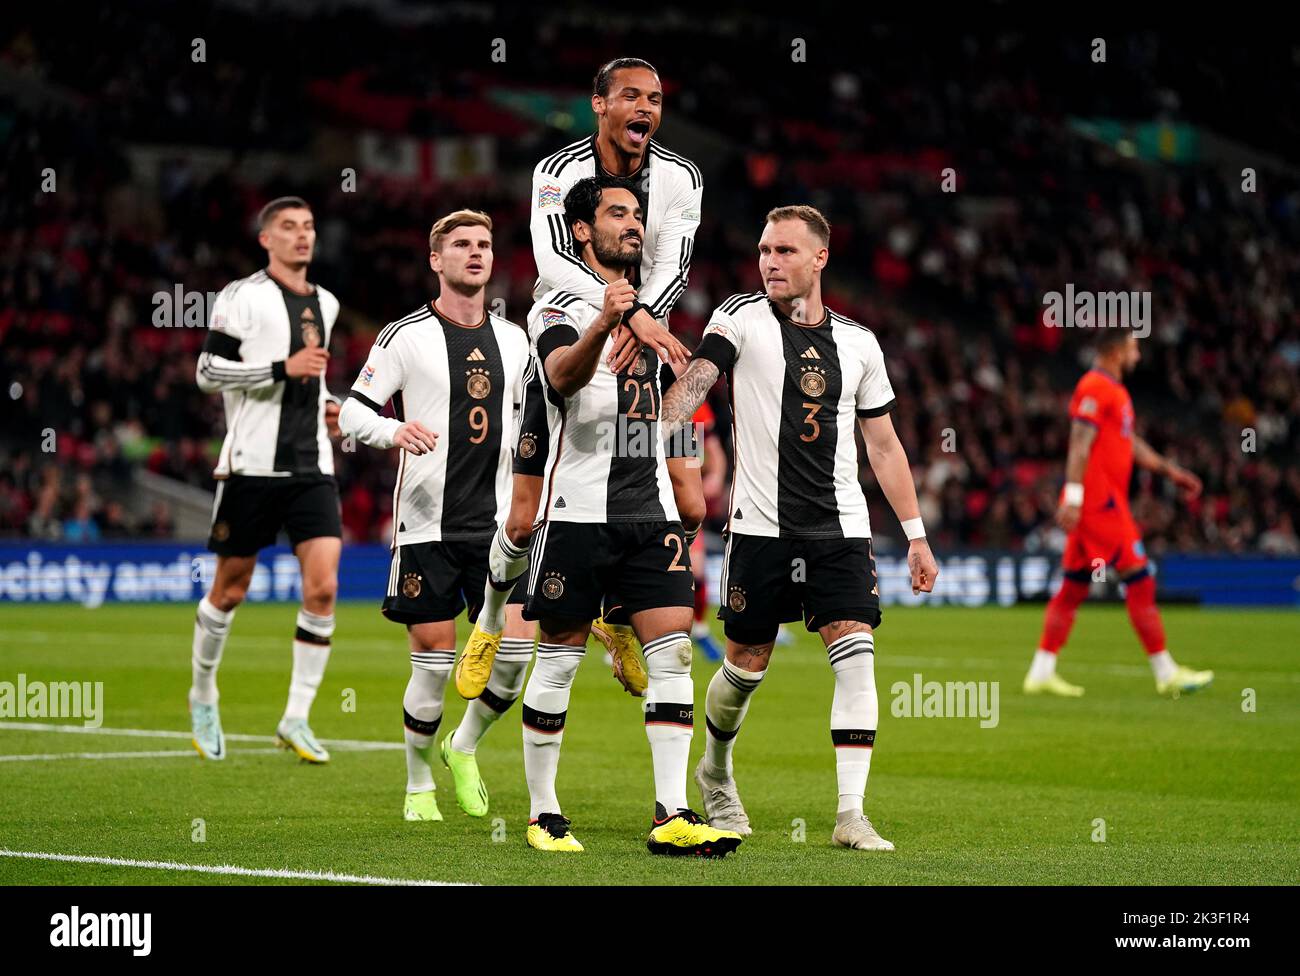 El alemán Ilkay Gundogan celebra marcar el primer gol de su equipo con sus compañeros durante el partido de la Liga de las Naciones de la UEFA en el estadio de Wembley, Londres. Fecha de la foto: Lunes 26 de septiembre de 2022. Foto de stock